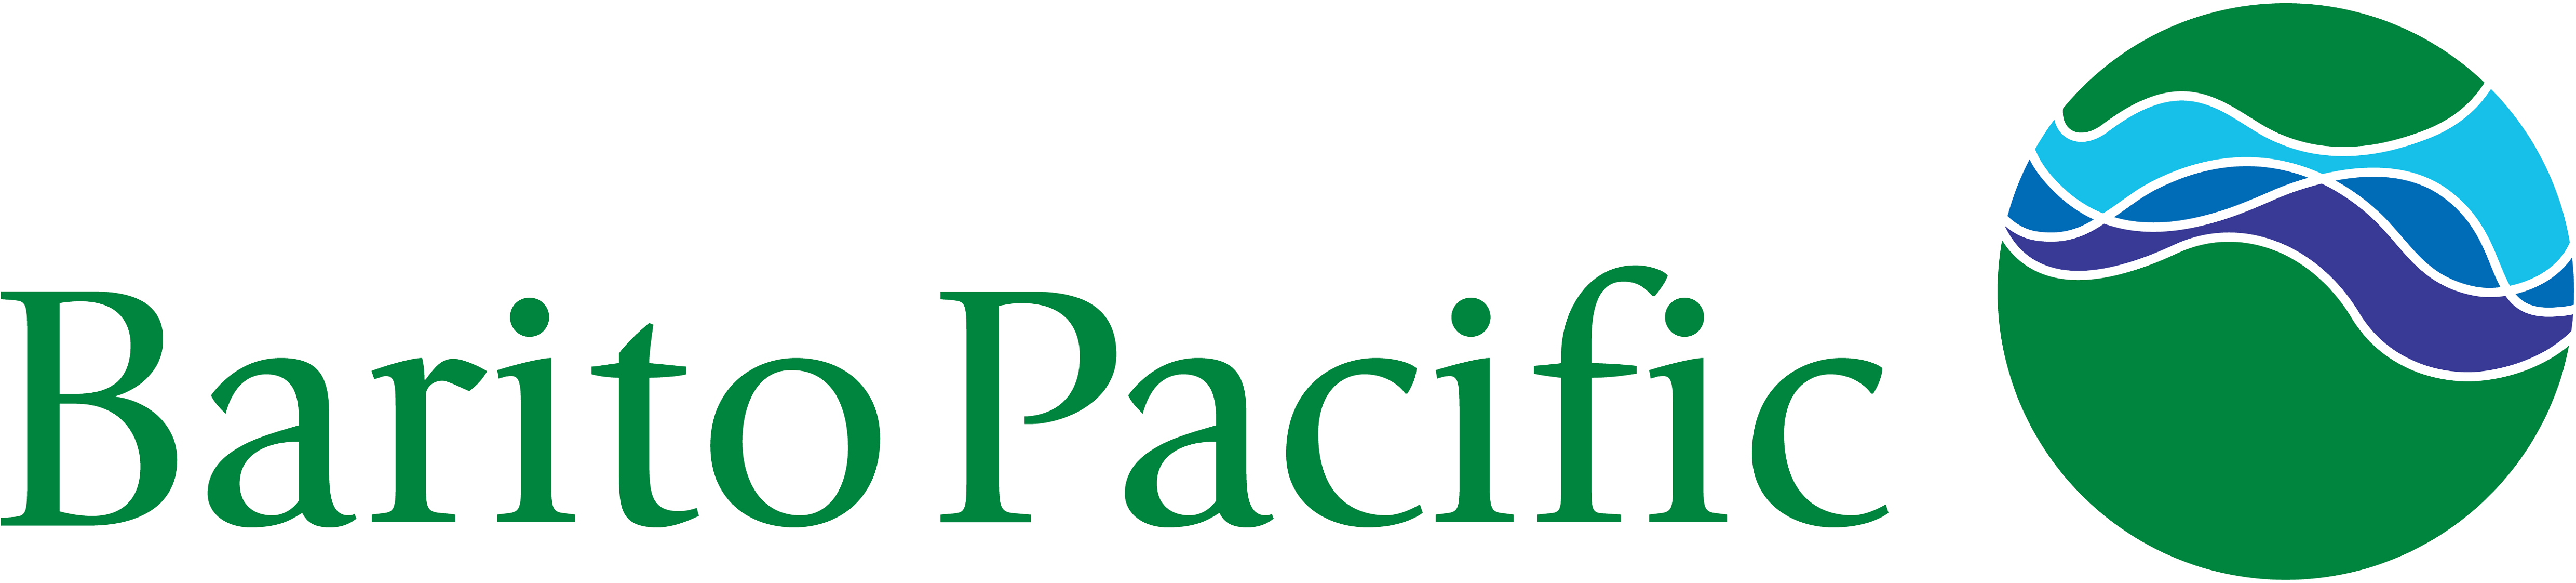 Barito Pacific Brand Logo